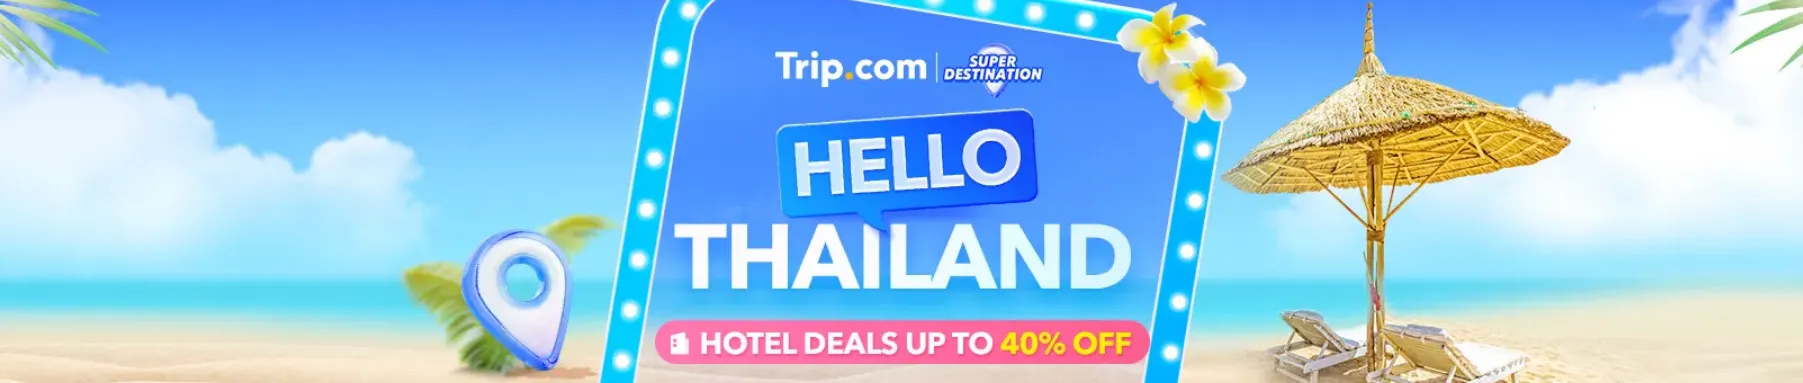 Trip.com Promo Code USA: 5.5 Mega Sale: Hello Thailand Hotel Deals Up to 40% Off